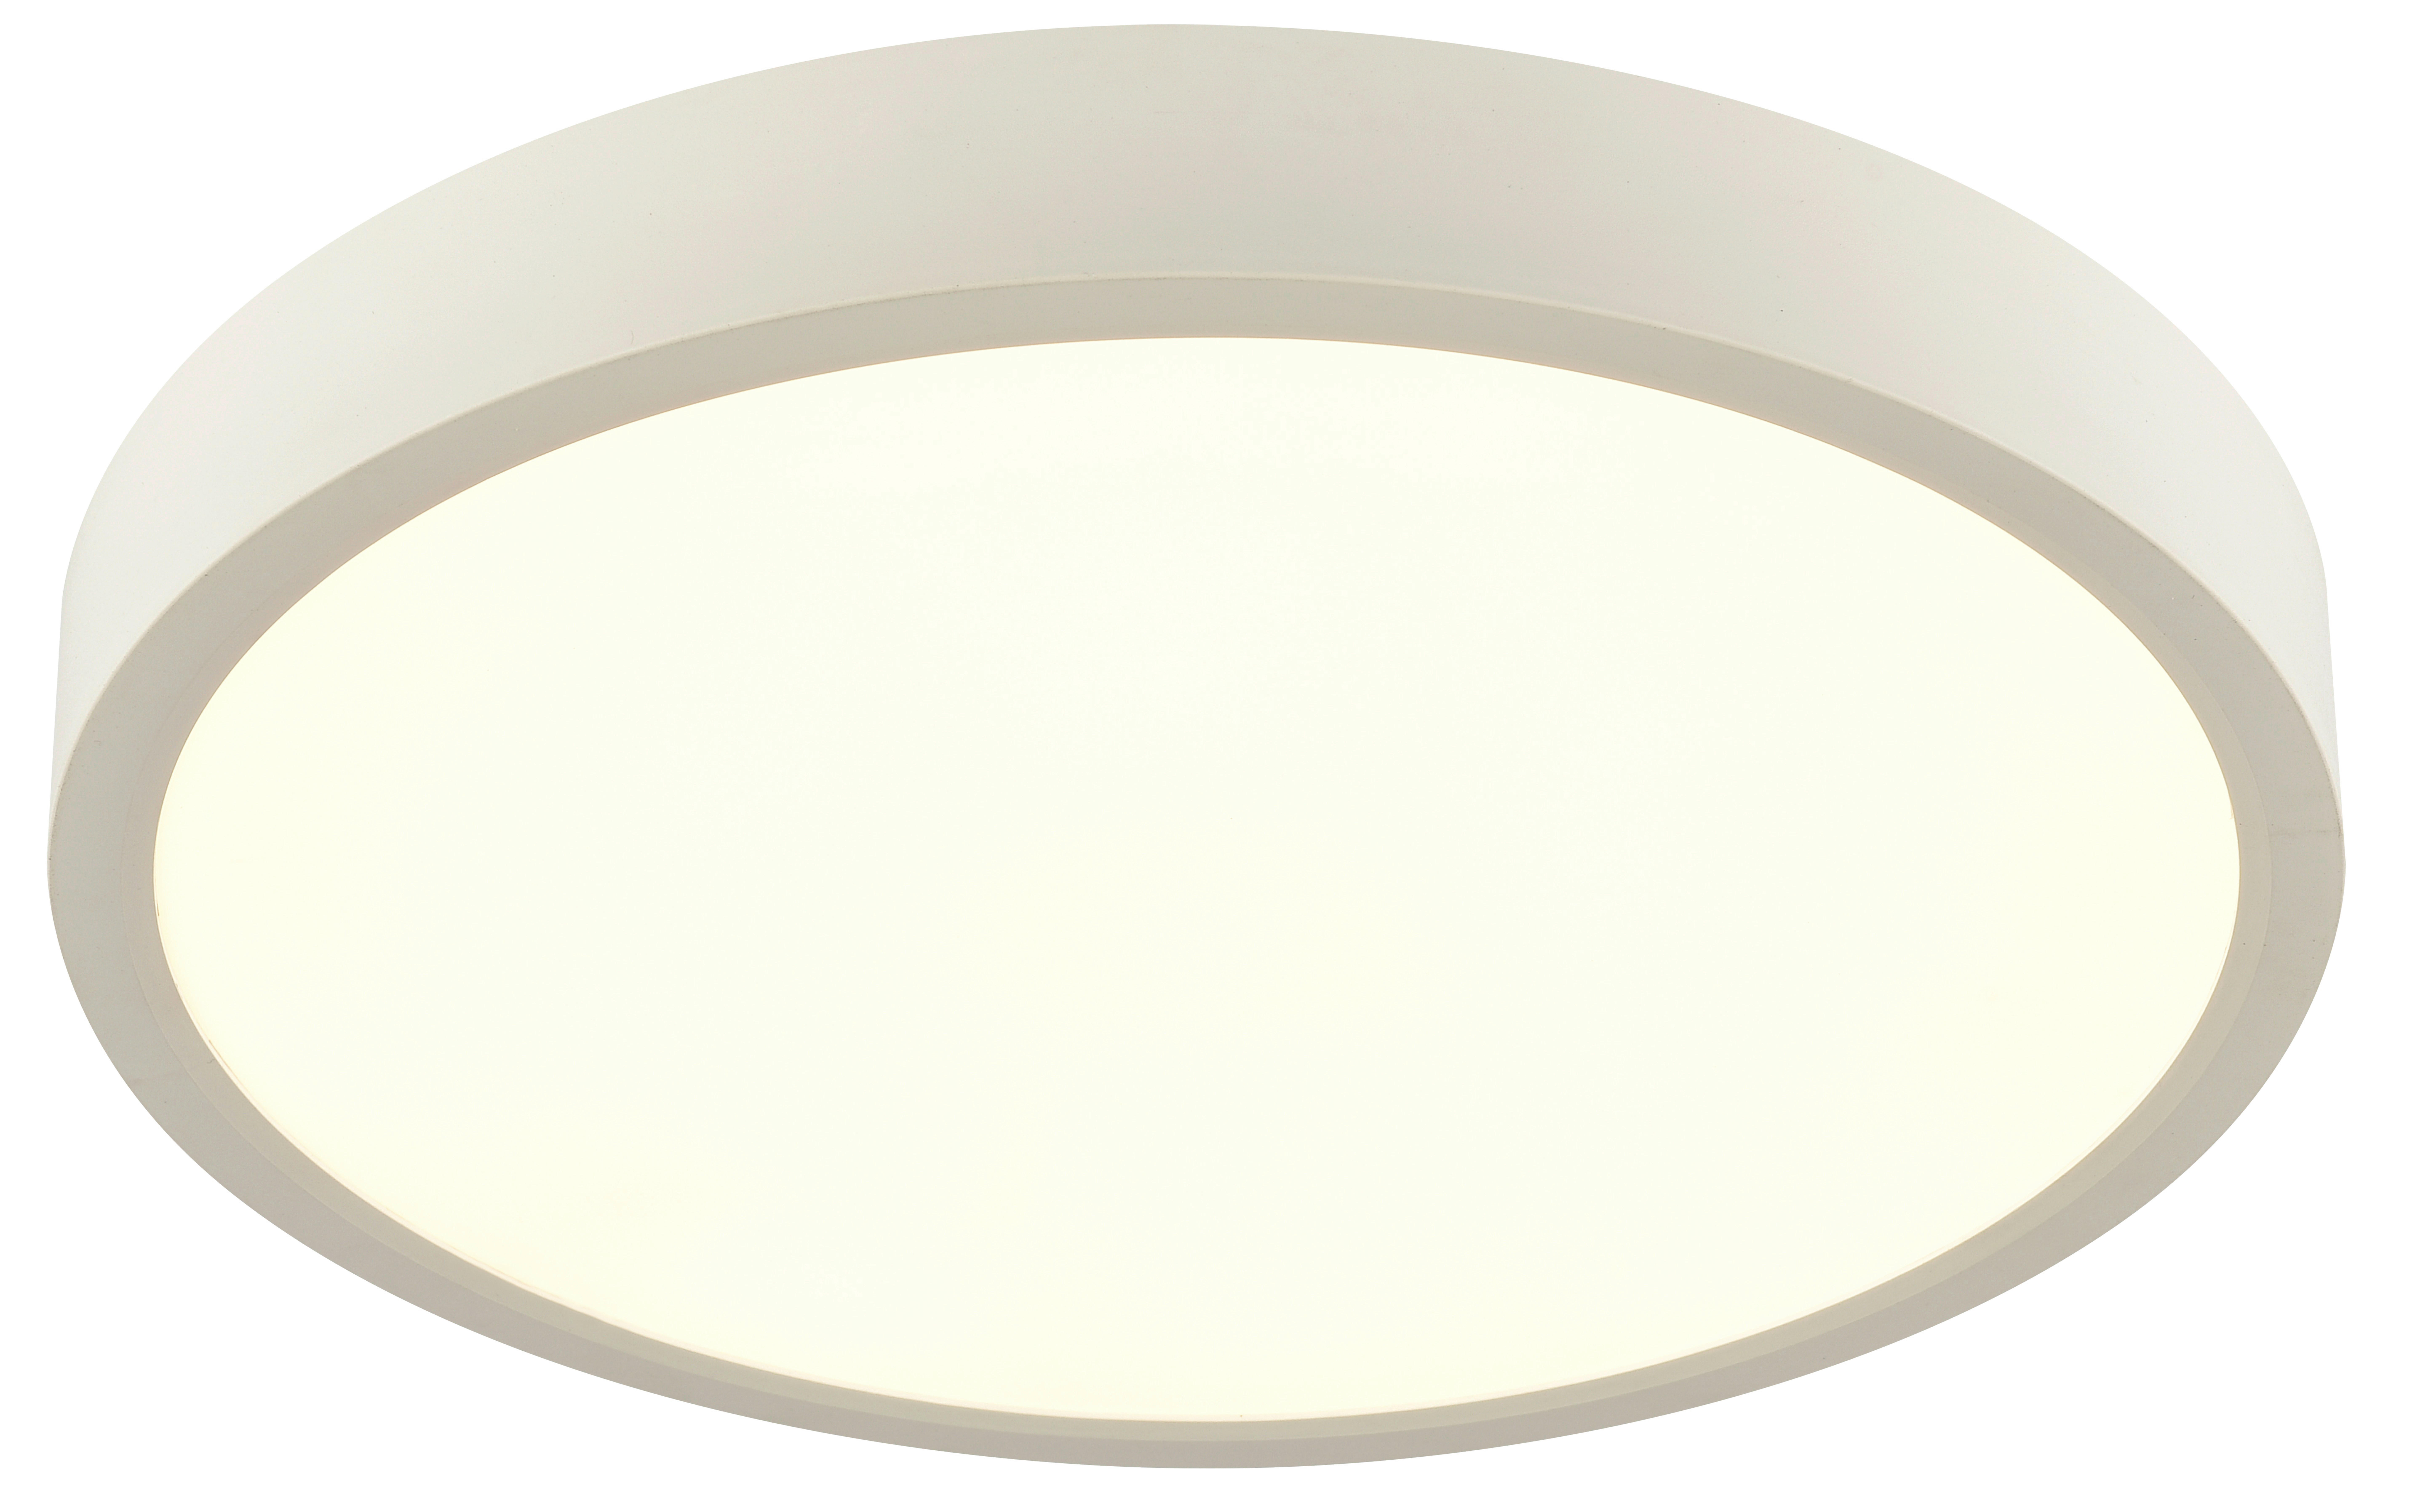 LED-DECKENLEUCHTE 20 W  30/3,6 cm    - Weiß, KONVENTIONELL, Kunststoff (30/3,6cm) - Boxxx